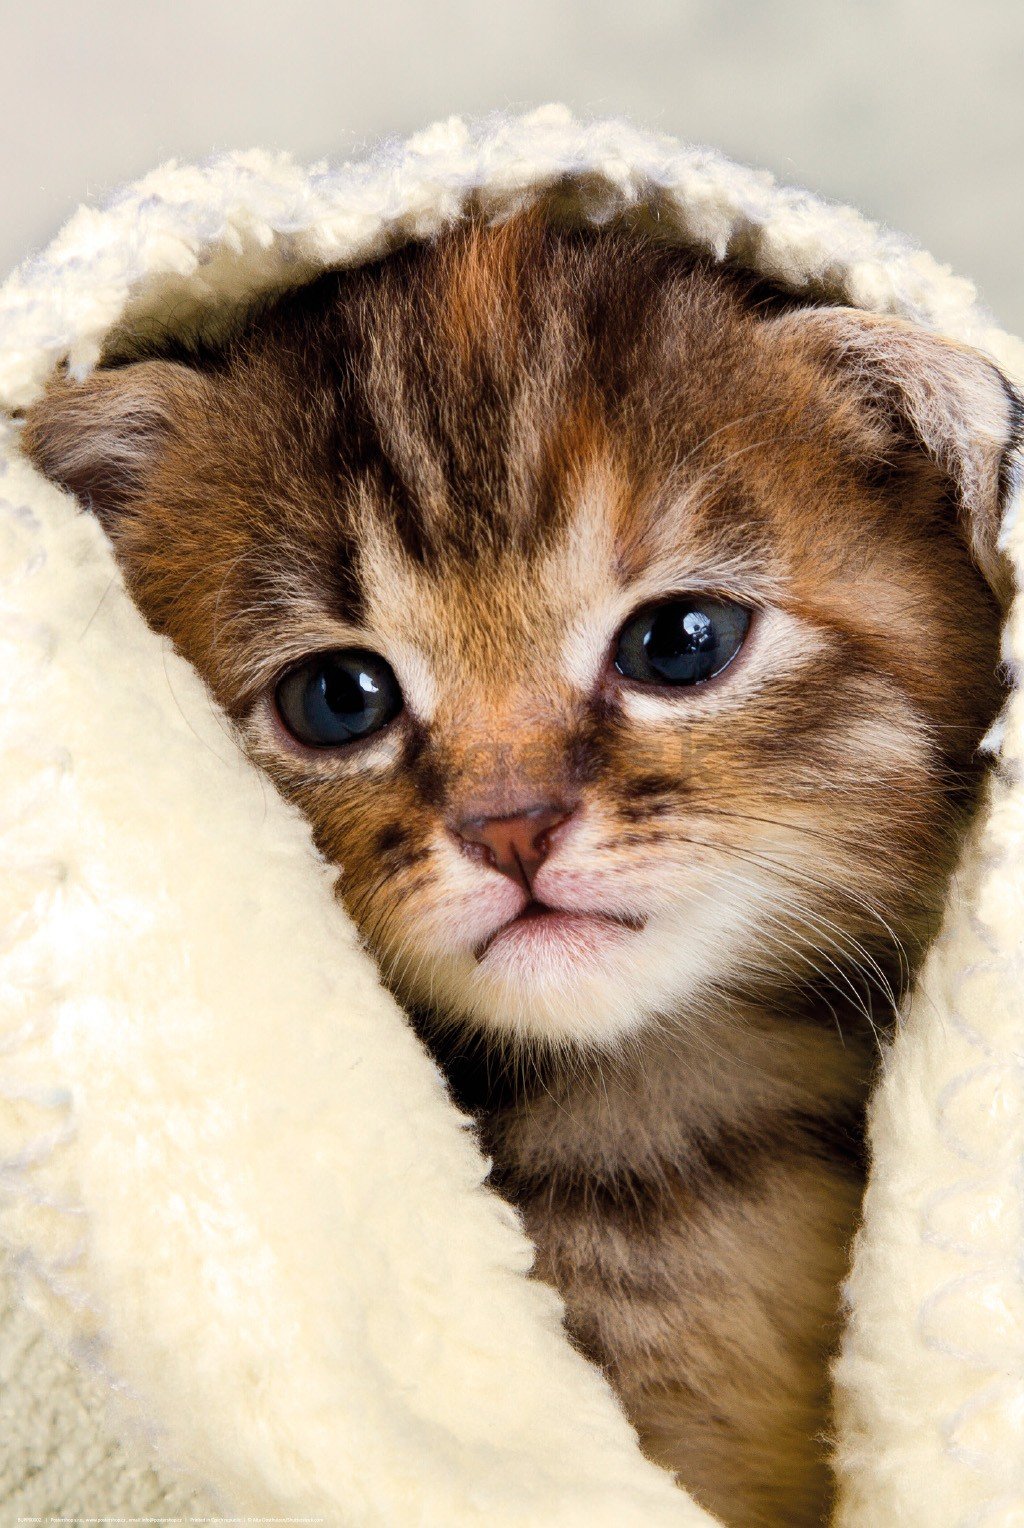 Plagát: Mačiatko v uteráku